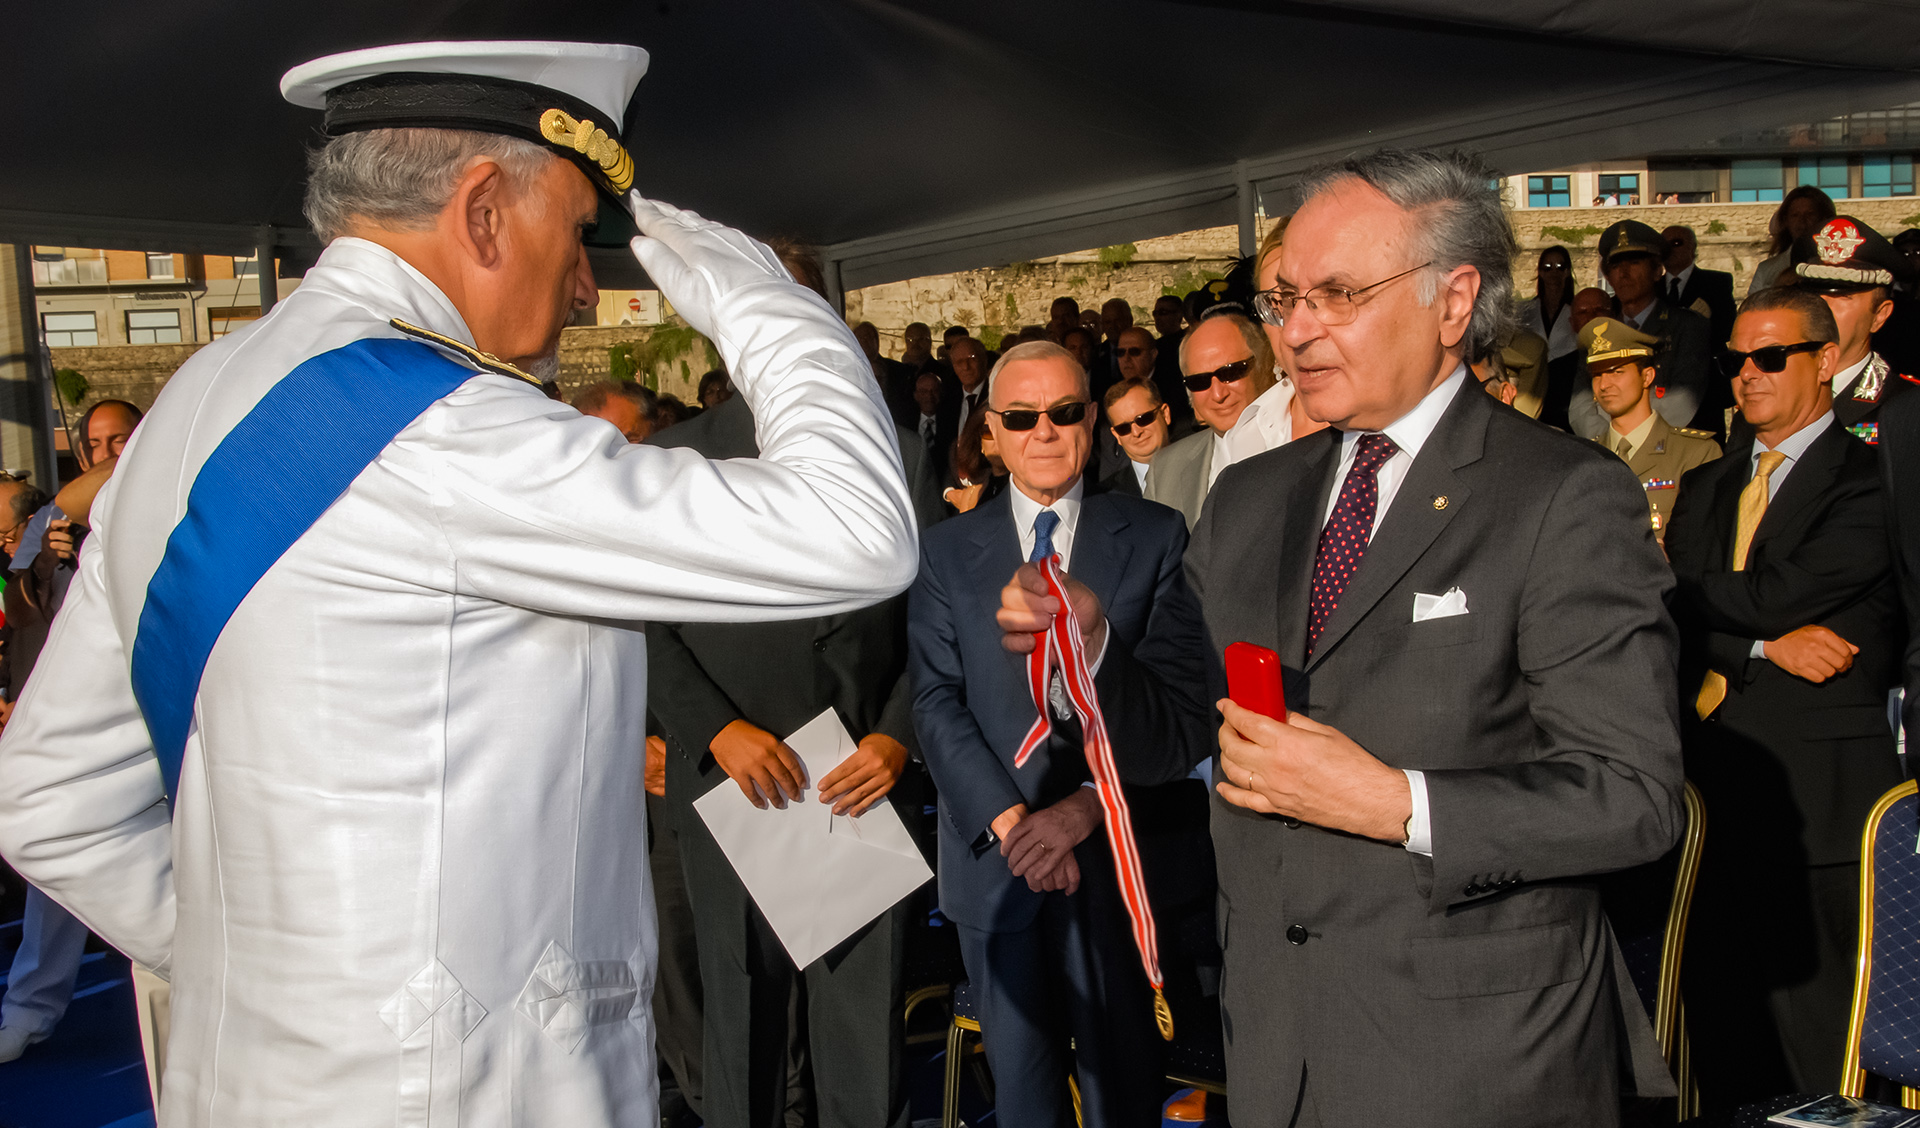 Verdienstmedaille in gold des Malteserordens für die Italienische küstenwache